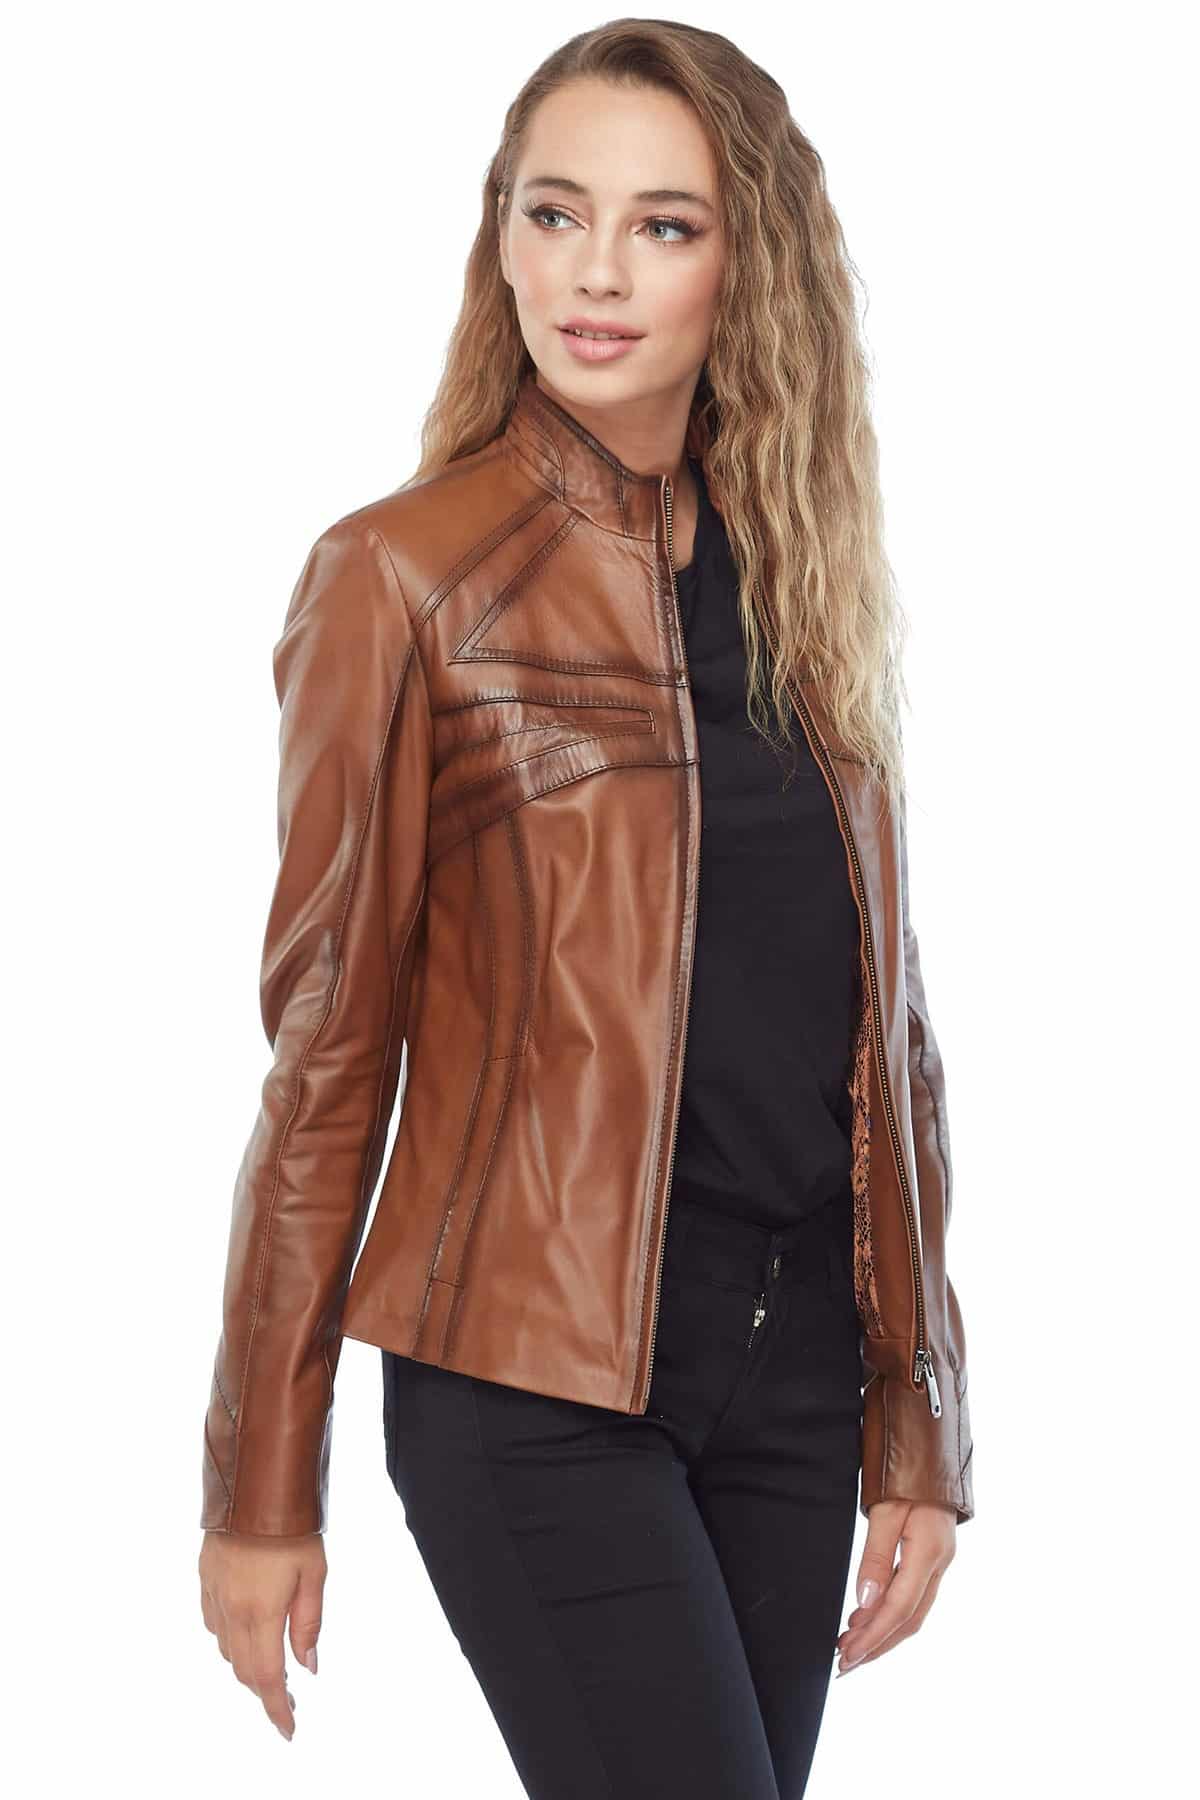 Rachel Grant Tan Leather Jacket Side